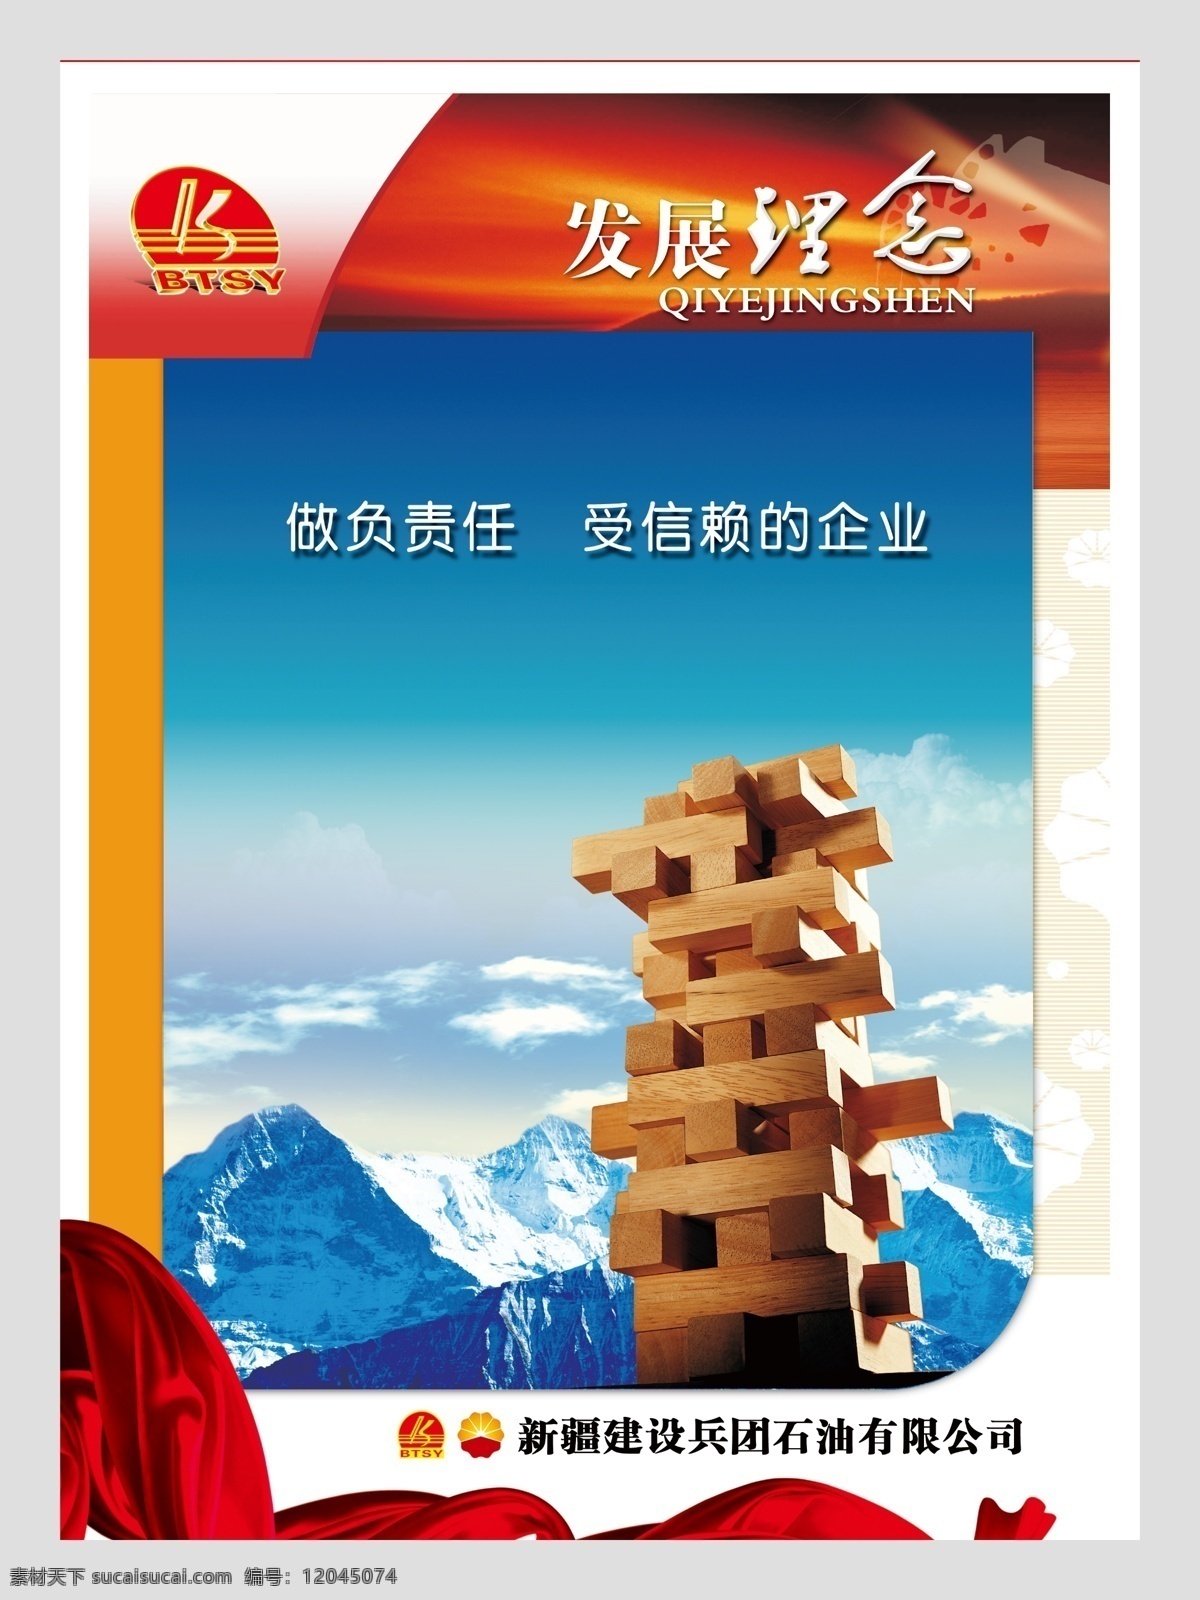 企业文化 发展理念 中国石油 兵团石油 立体标志 飘带 雪山 积木 团结 广告设计模板 源文件